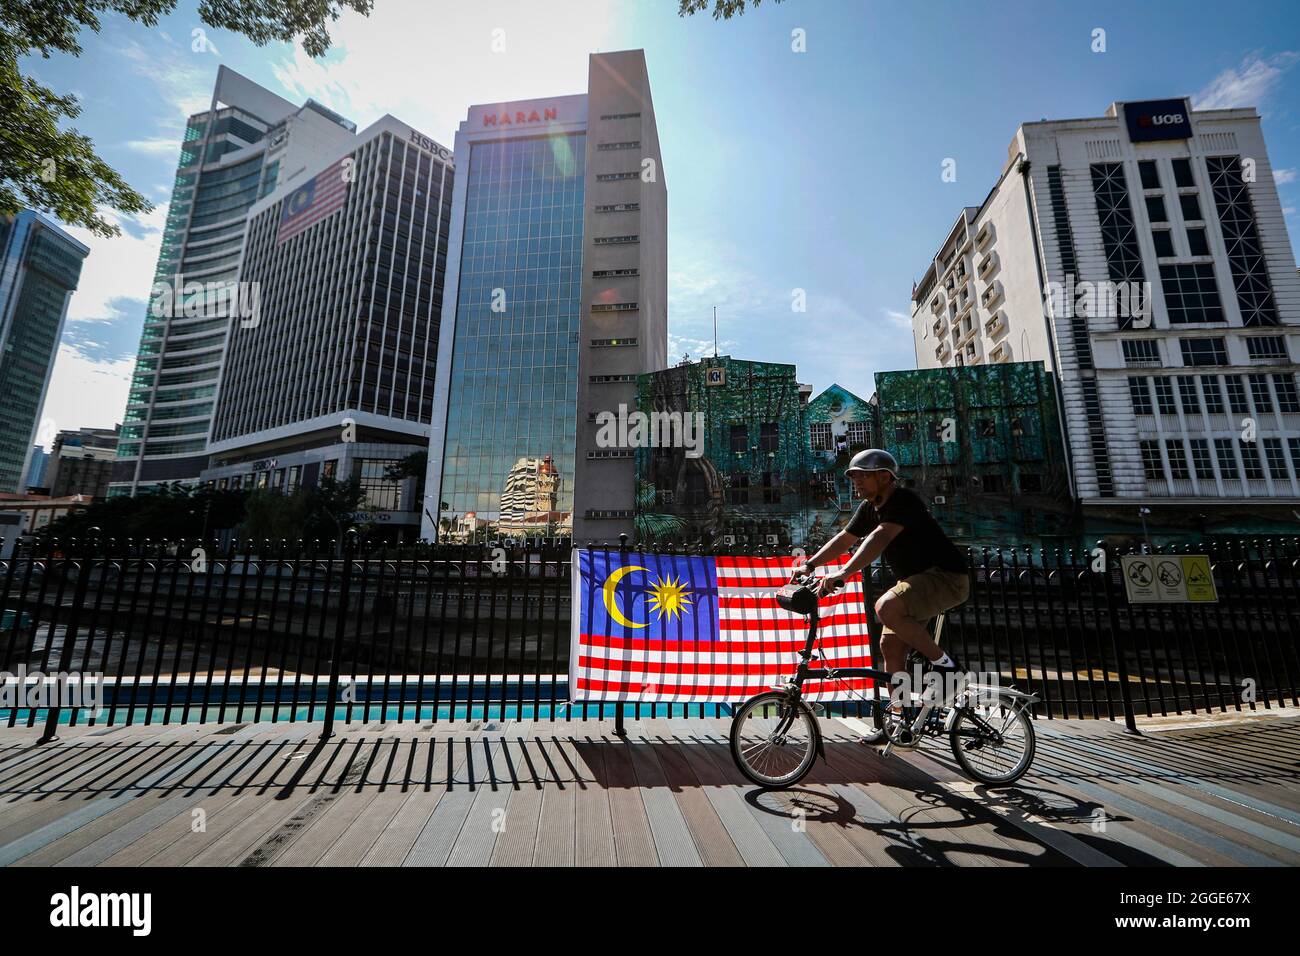 Un cycliste passe devant un drapeau malaisien lors des célébrations de la 64e journée nationale à Kuala Lumpur.la Malaisie célèbre chaque année son 64ème jour de l'indépendance le 31 août, elle commémore la Déclaration d'indépendance de Malaisie du 31 août 1957. Banque D'Images